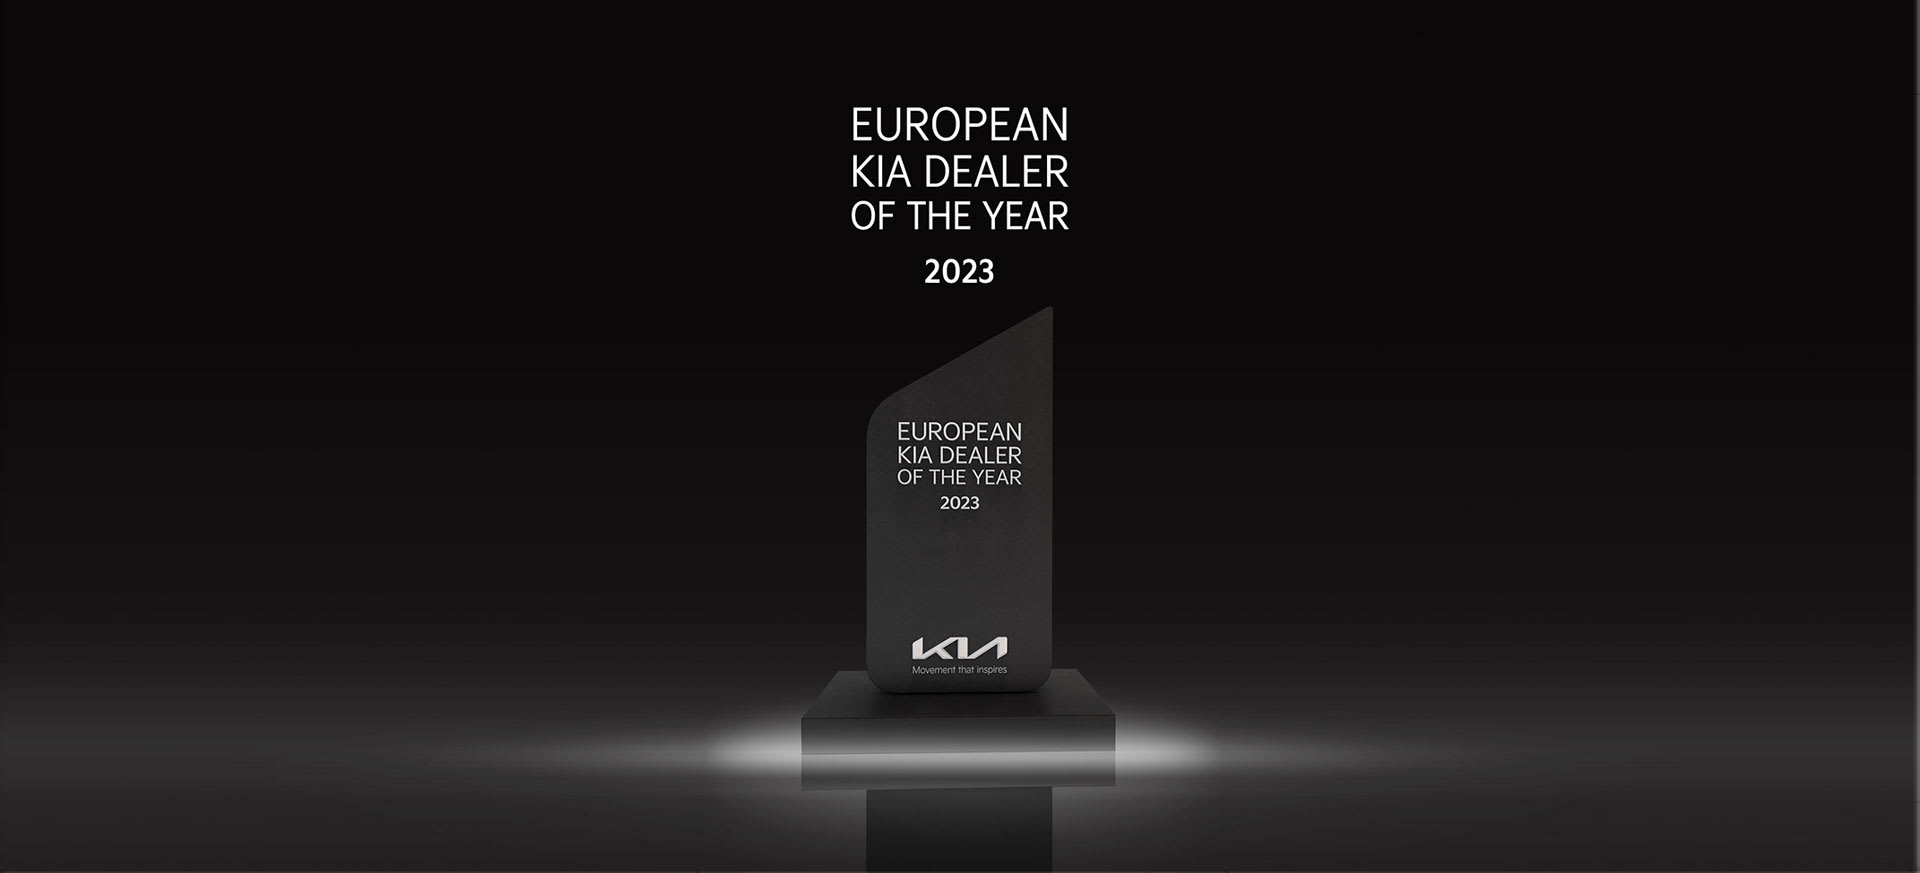 #1 Kia Dealer In Europe